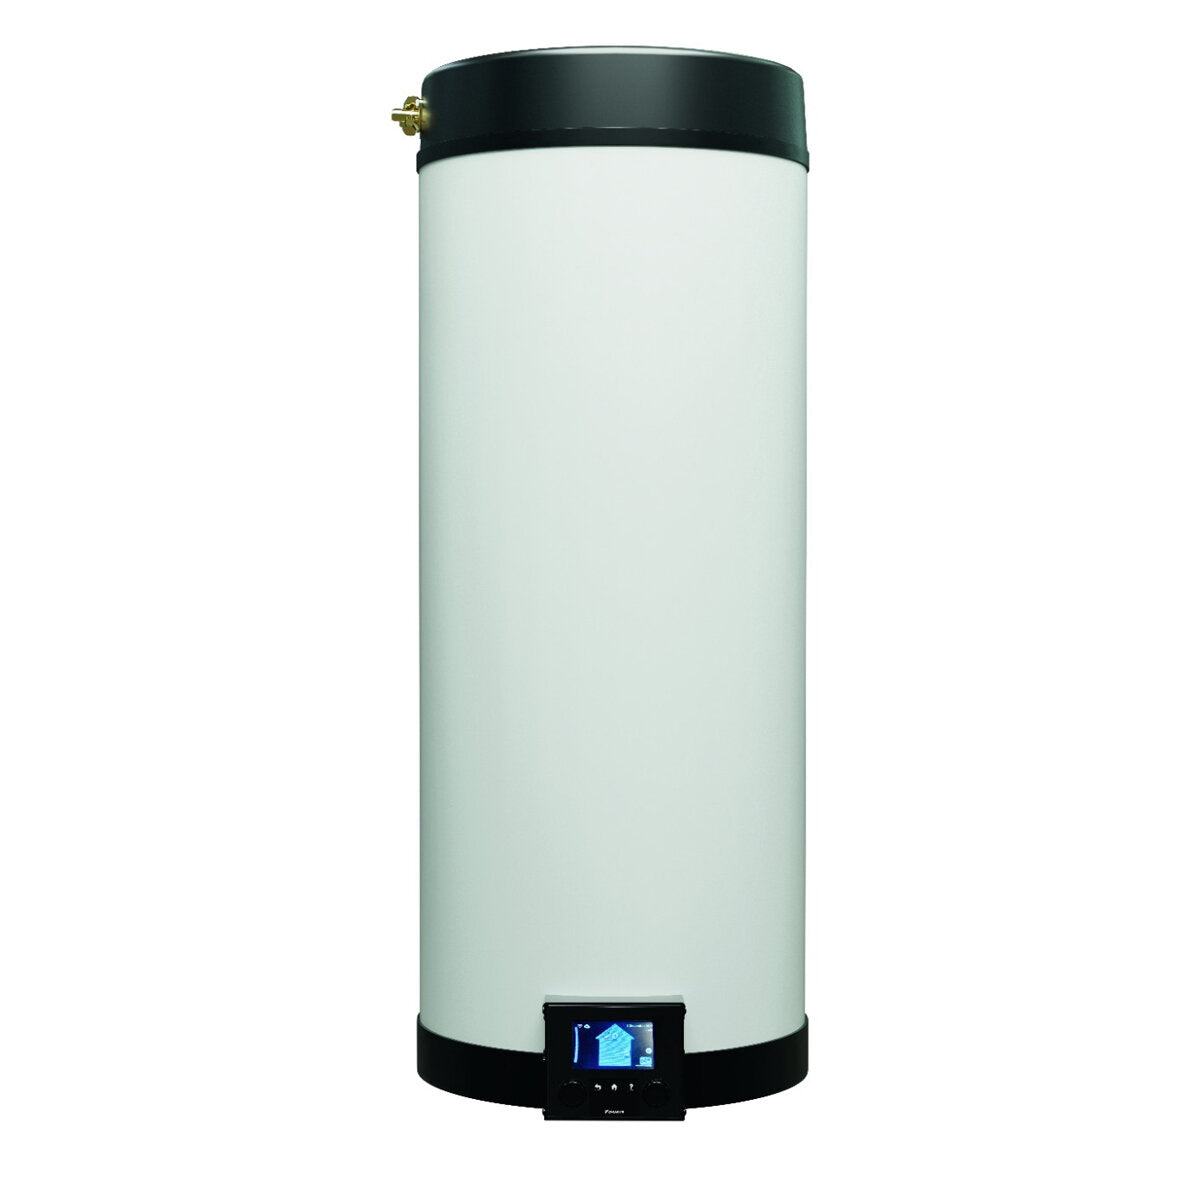 Daikin Multi+ trial split air conditioning and domestic hot water system - Perfera All Seasons internal units 9000+9000+12000 BTU - 90 l tank